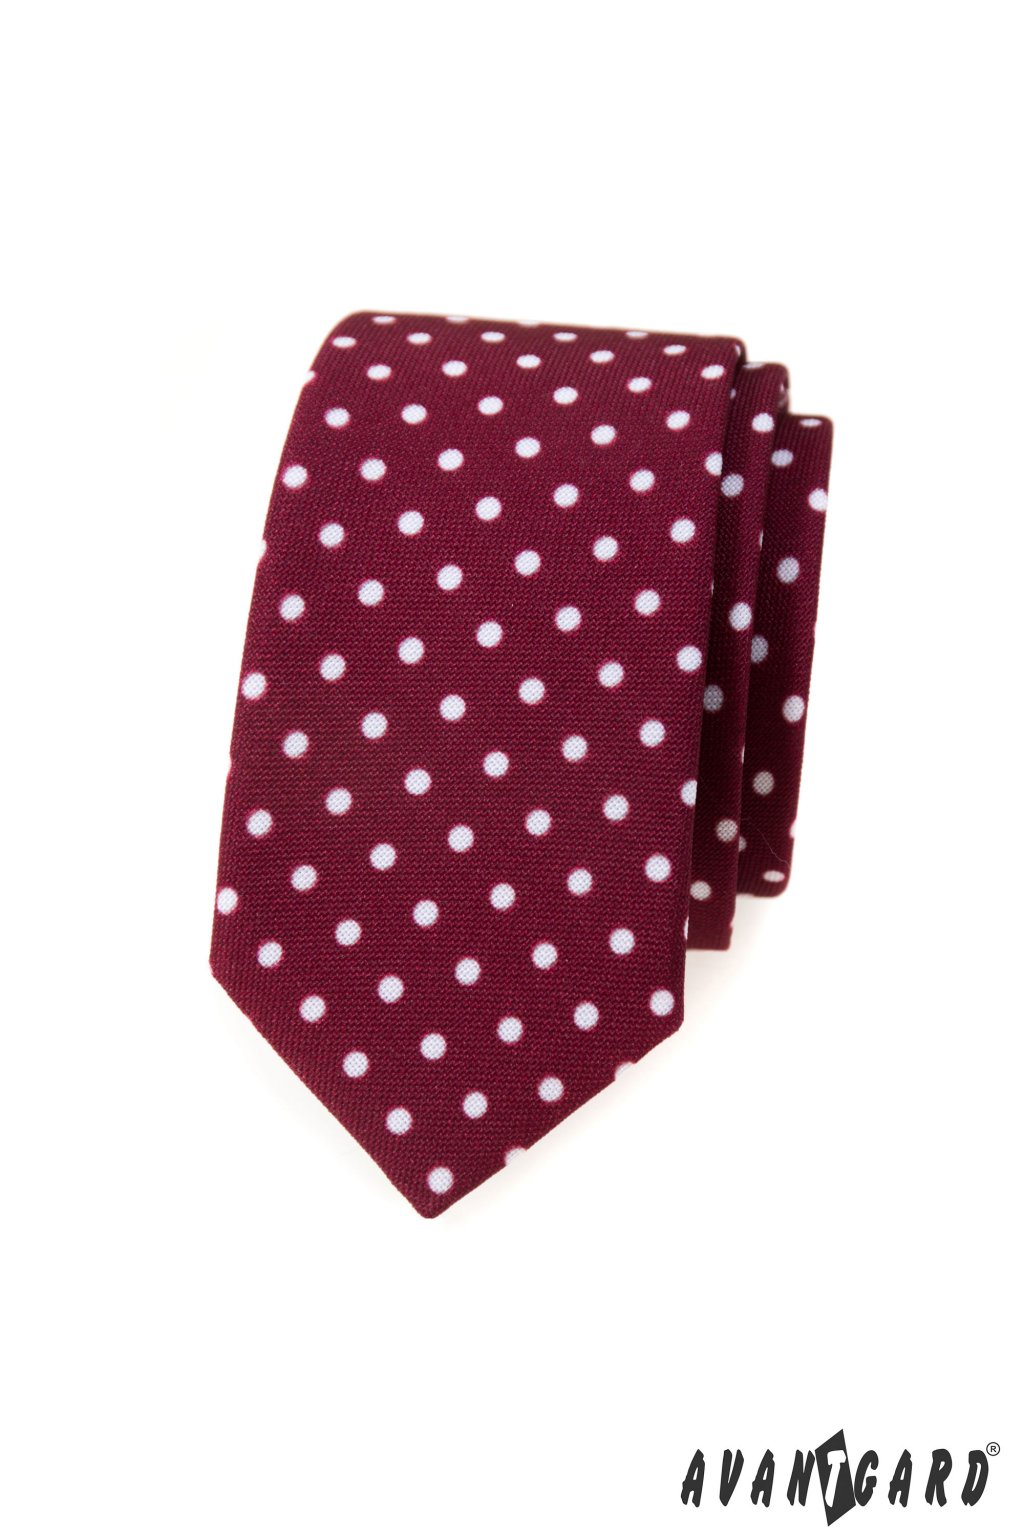 Pánská luxusní kravata SLIM bordó s bílými puntíky 571 - 1980